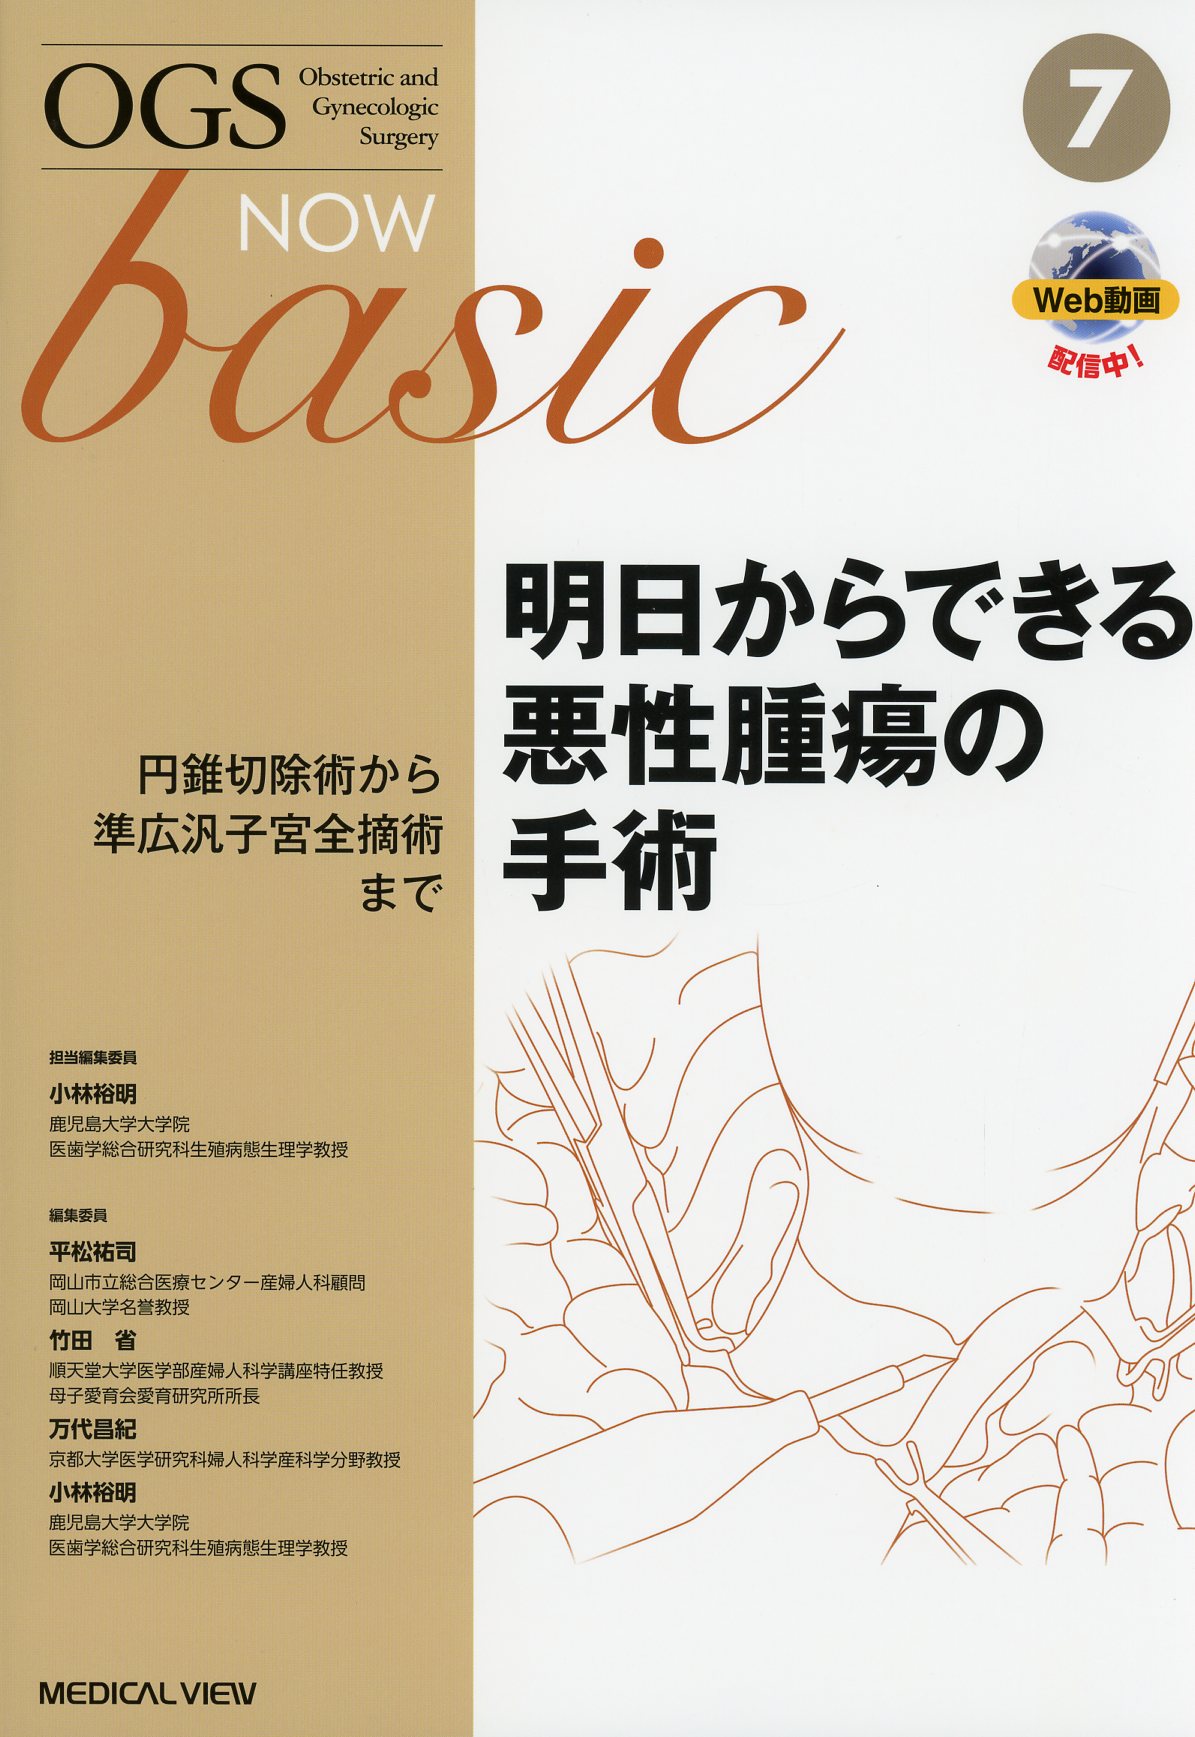 basic　No.7　OGS　高陽堂書店　NOW　明日からできる悪性腫瘍の手術